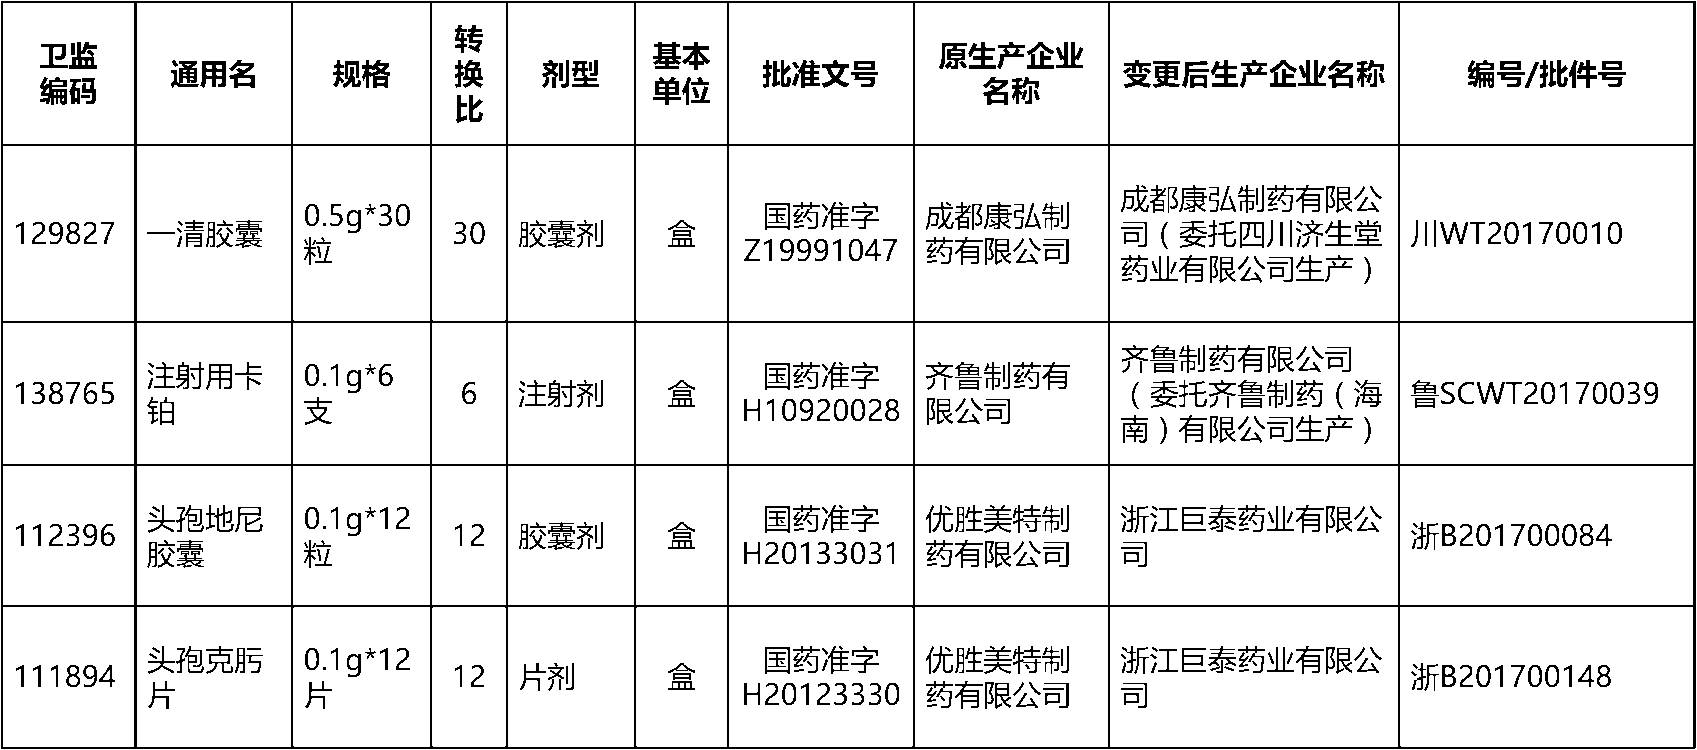 关于深圳市公立医院药品集团采购目录部分成交